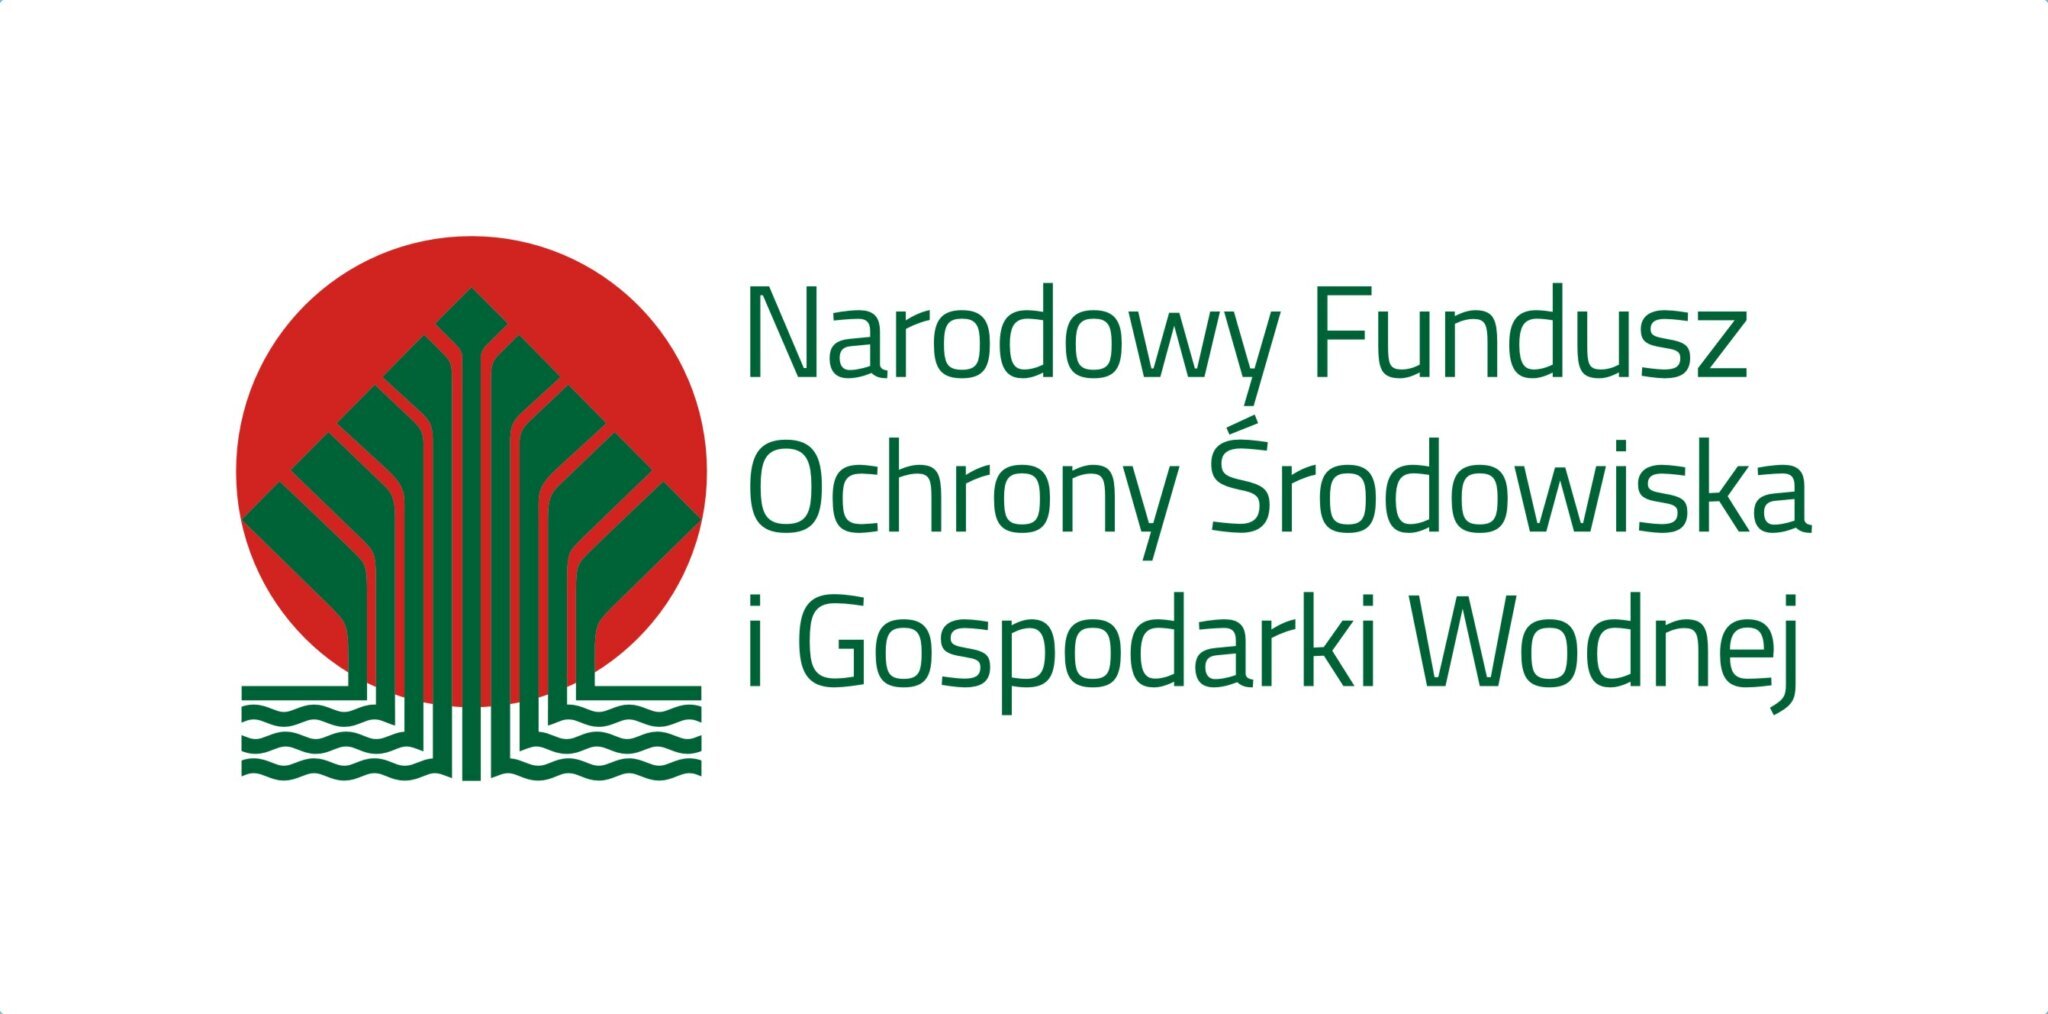 Logotyp Narodowego Funduszu Ochrony Środowiska i Gospodarki Wodnej&nbsp;